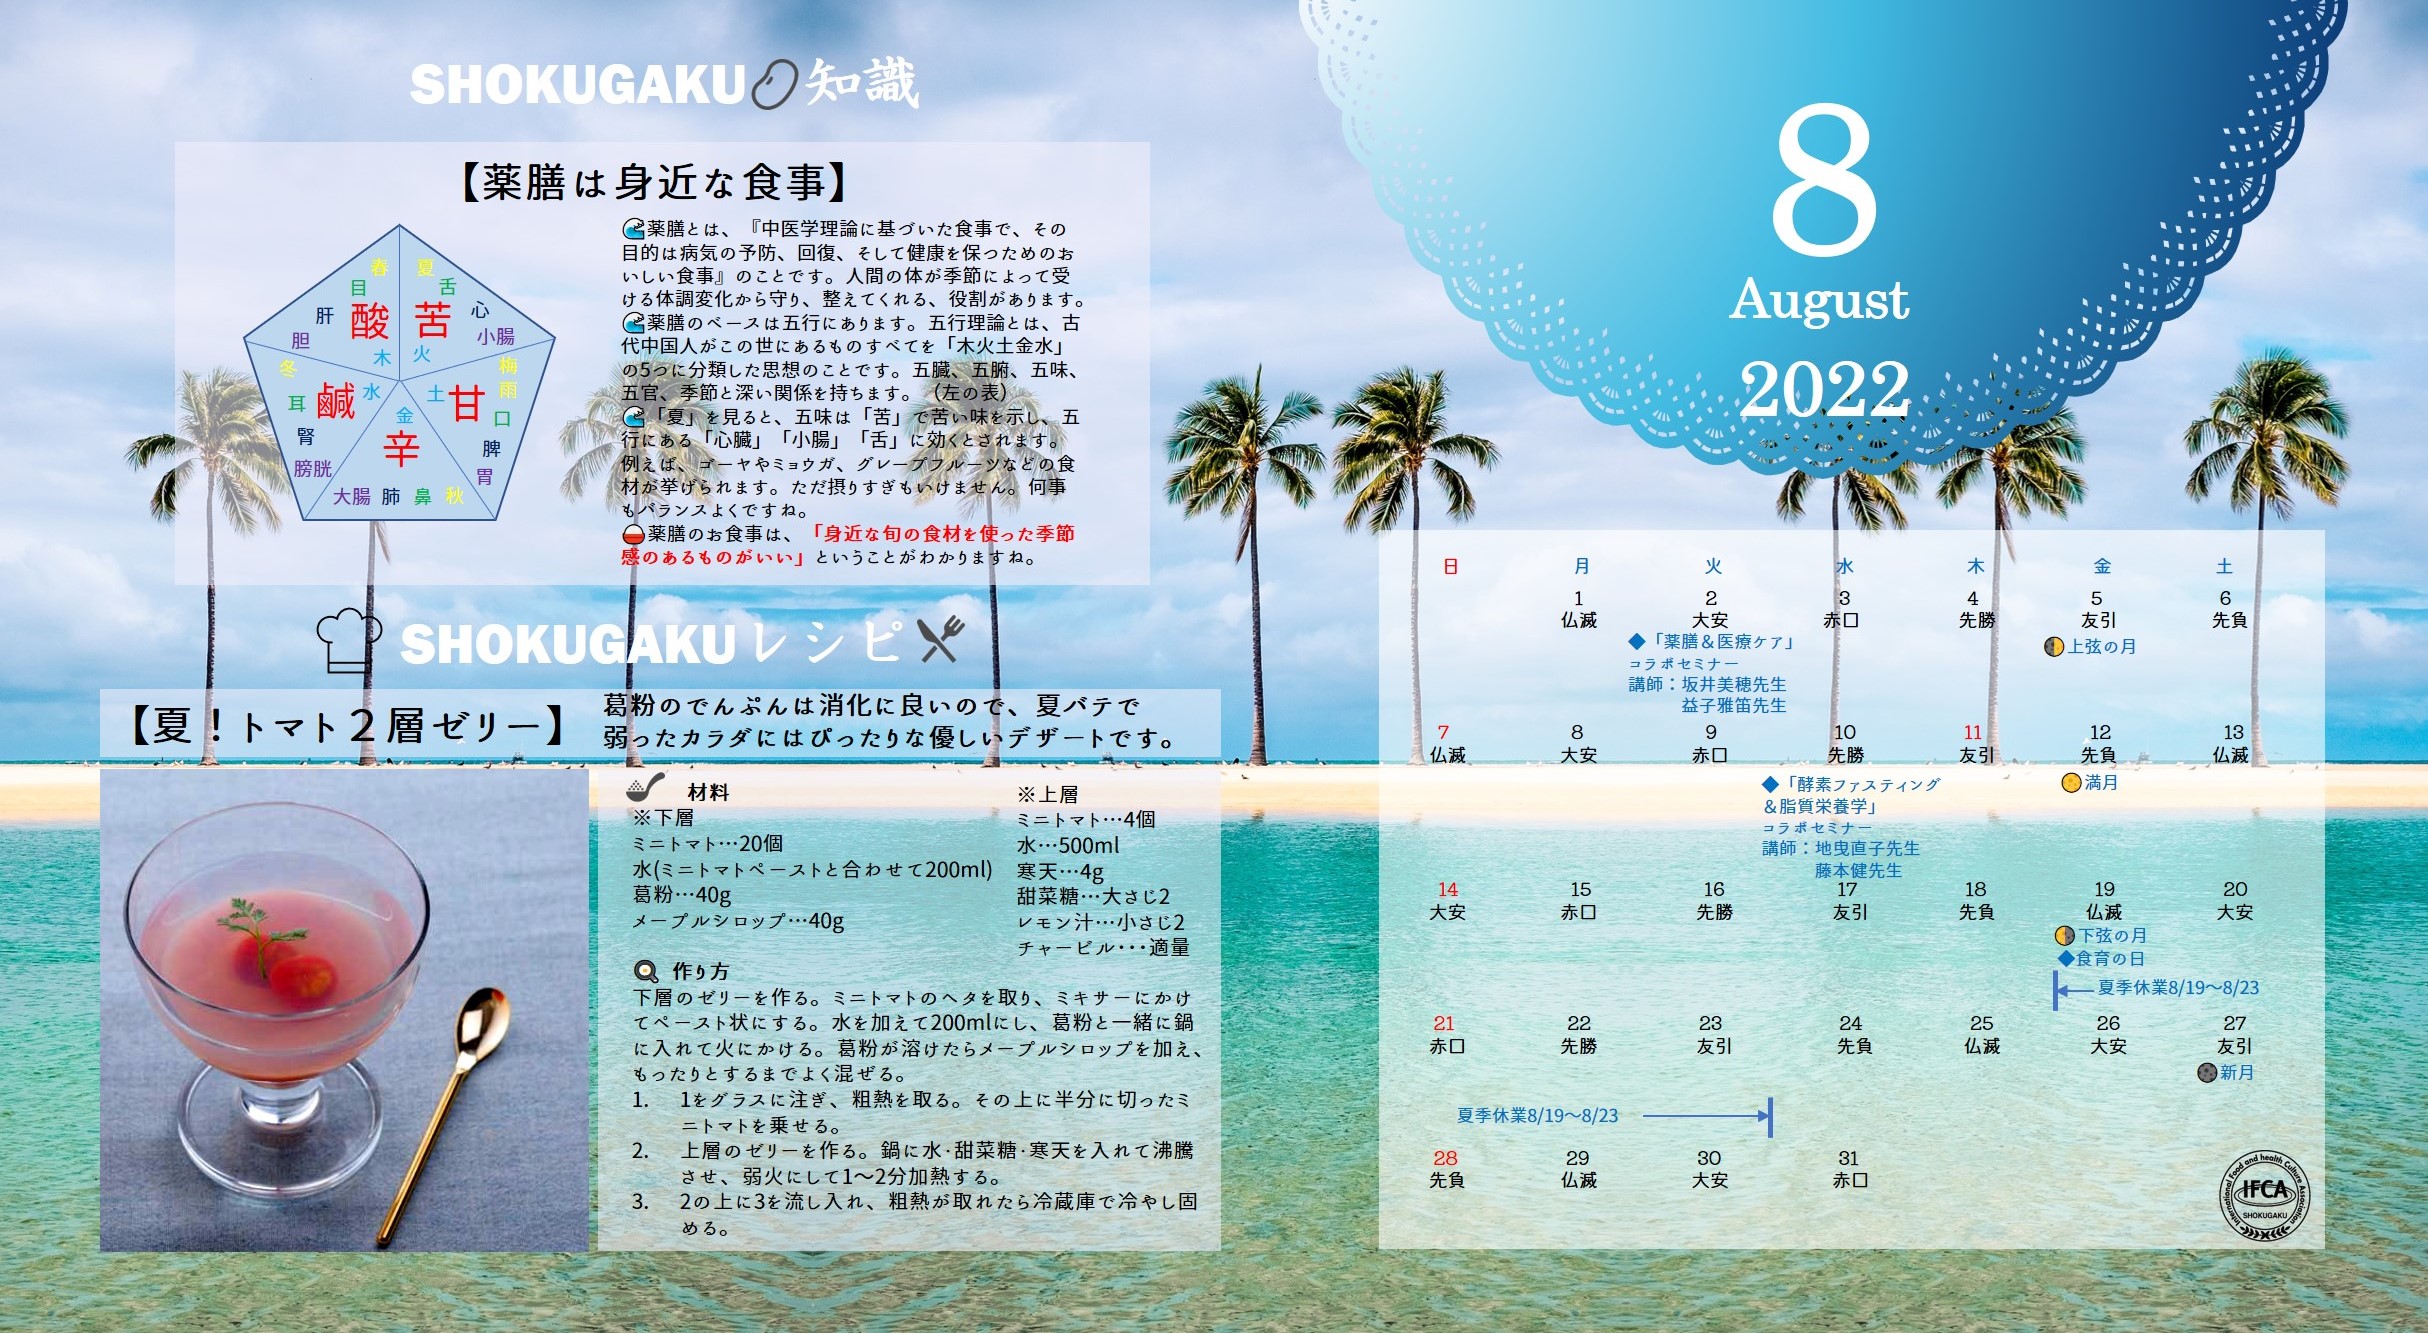 ８月 Shokugakuオリジナル カレンダー壁紙プレゼント お知らせ Ifca国際食学協会